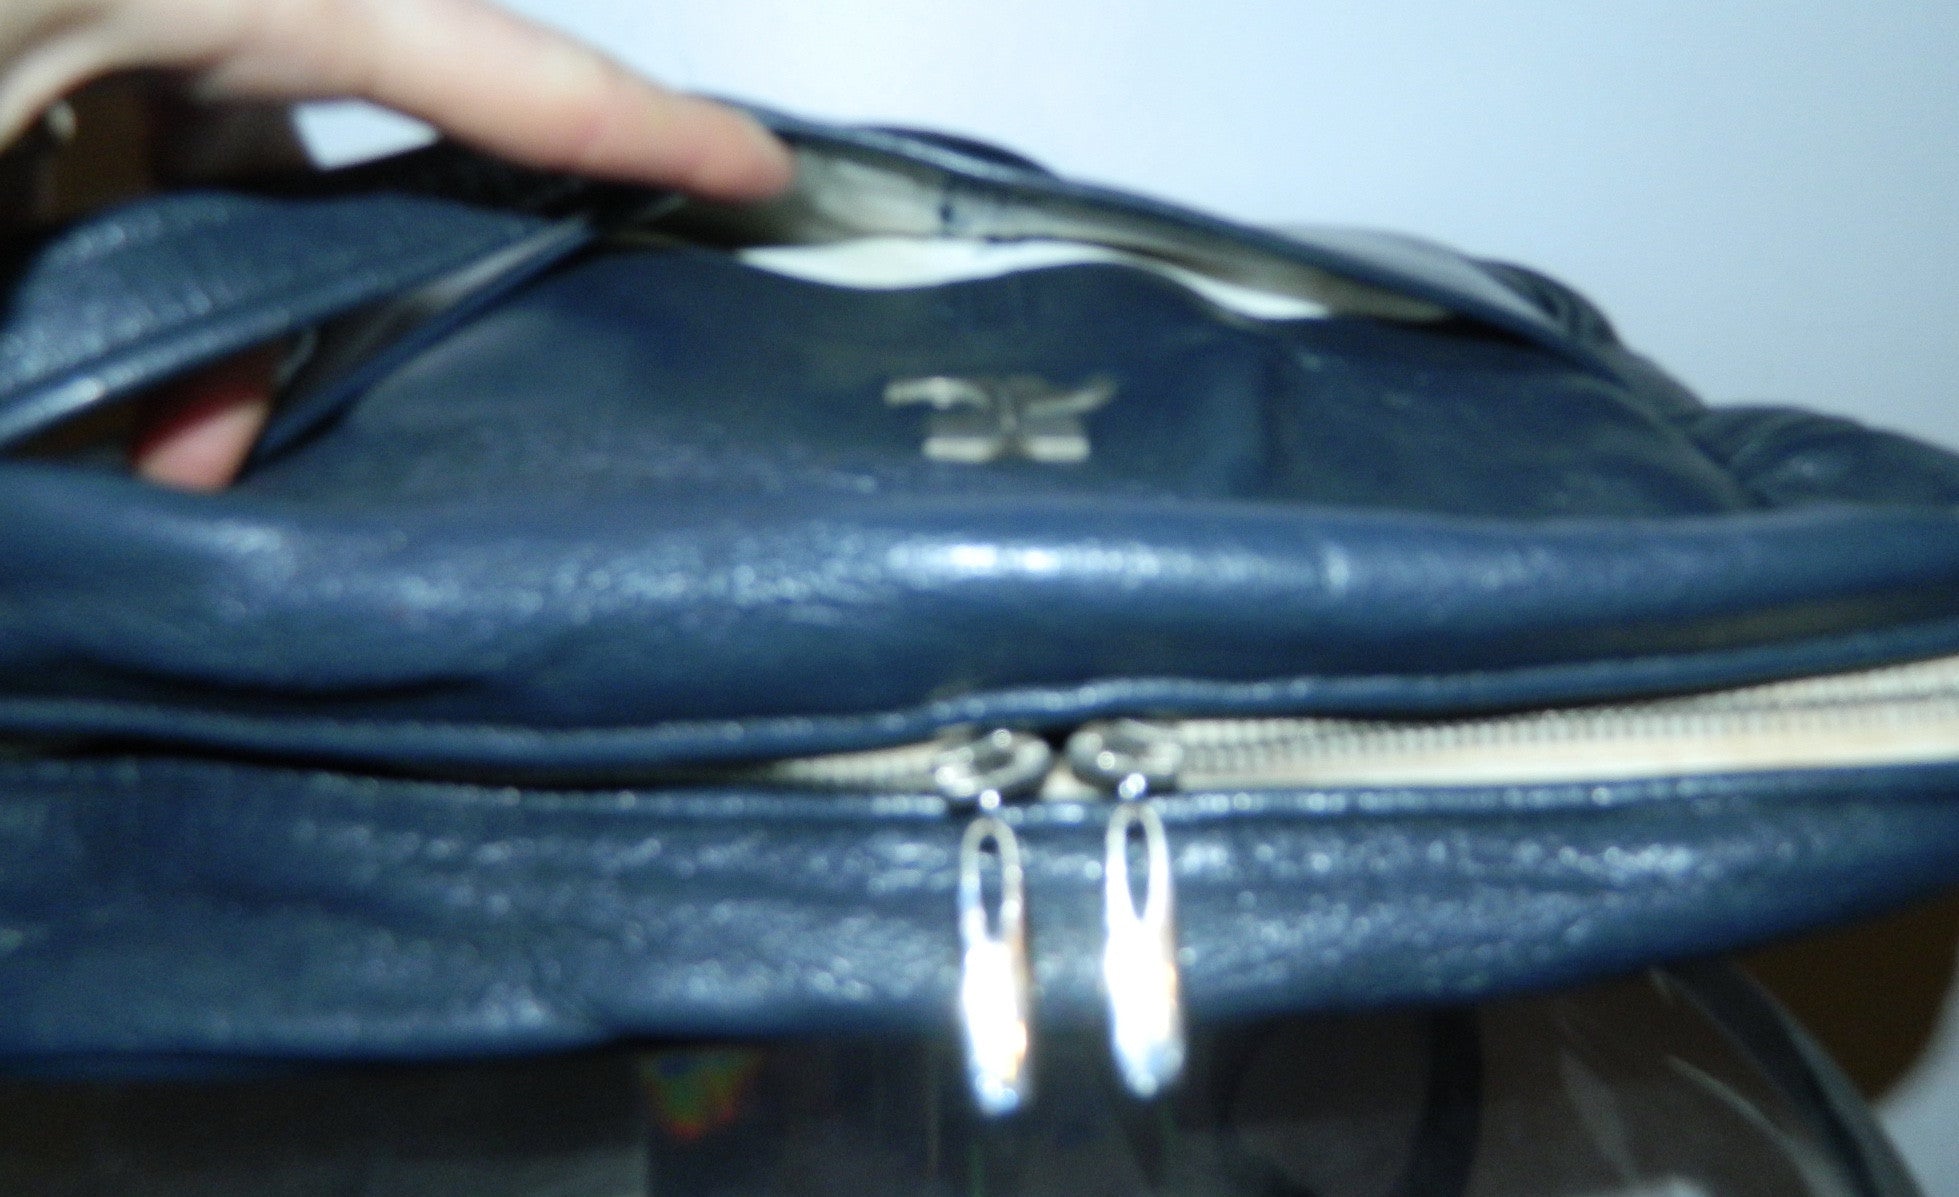 Courrèges leather camera bag / vintage 1960s dark blue COURREGES cross- body purse